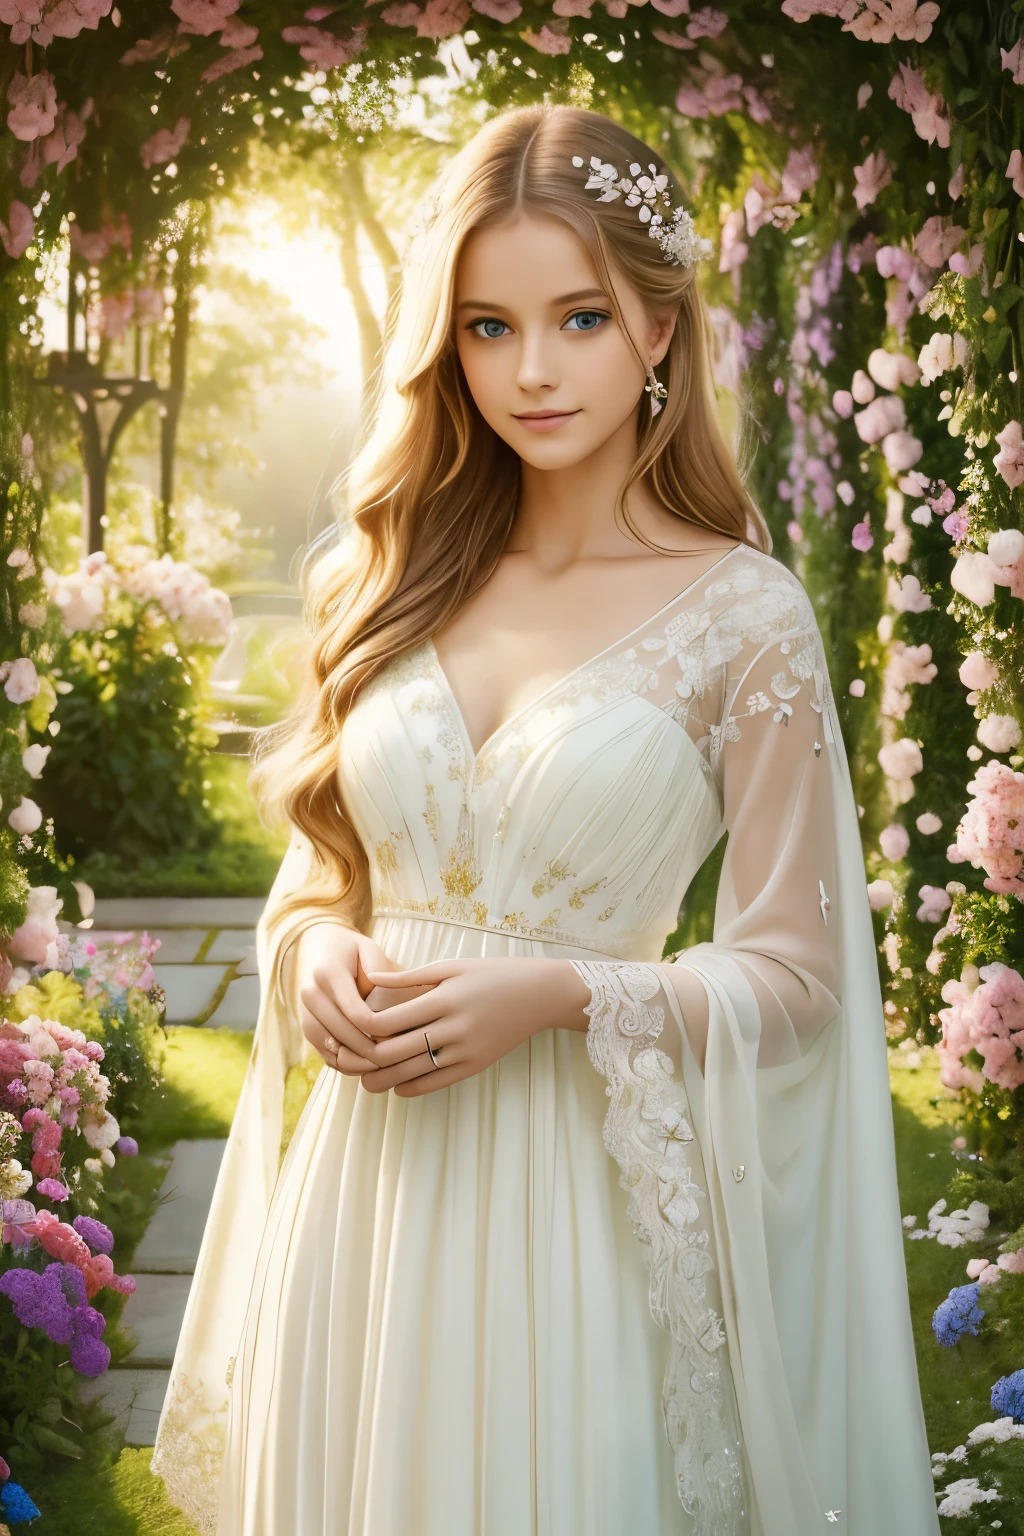 流れるような金色の髪と魅惑的な青い瞳を持つ少女, エレガントな白いドレスを着て, 咲き誇る花と豊かな緑で満たされた活気に満ちた庭園の真ん中に立つ. 太陽の光が彼女の繊細な顔を優しく照らしている, 彼女の完璧な肌に柔らかな輝きを放つ. 彼女は繊細な蝶を手に持っています, 穏やかな風が彼女の周りを渦巻く中, 花が調和して踊るようにする. その光景は息を呑むような油絵に描かれている, 細部まで丁寧に作られており傑作です. 色彩は鮮やかで鮮やかです, パステル調の淡い色合い, 芸術作品に夢のような質感を与える. 照明は柔らかく拡散している, 穏やかで静かな雰囲気を作り出す. 高解像度の画像は、アーティストの完璧な技術を披露している, あらゆる複雑な詳細を正確に捉える. 全体的な雰囲気は美しさを感じさせます, グレース, そして魔法. アートワークは古典的な肖像画を彷彿とさせます, ファンタジーと奇抜さを少し加えて, 驚きと畏敬の念を呼び起こす.